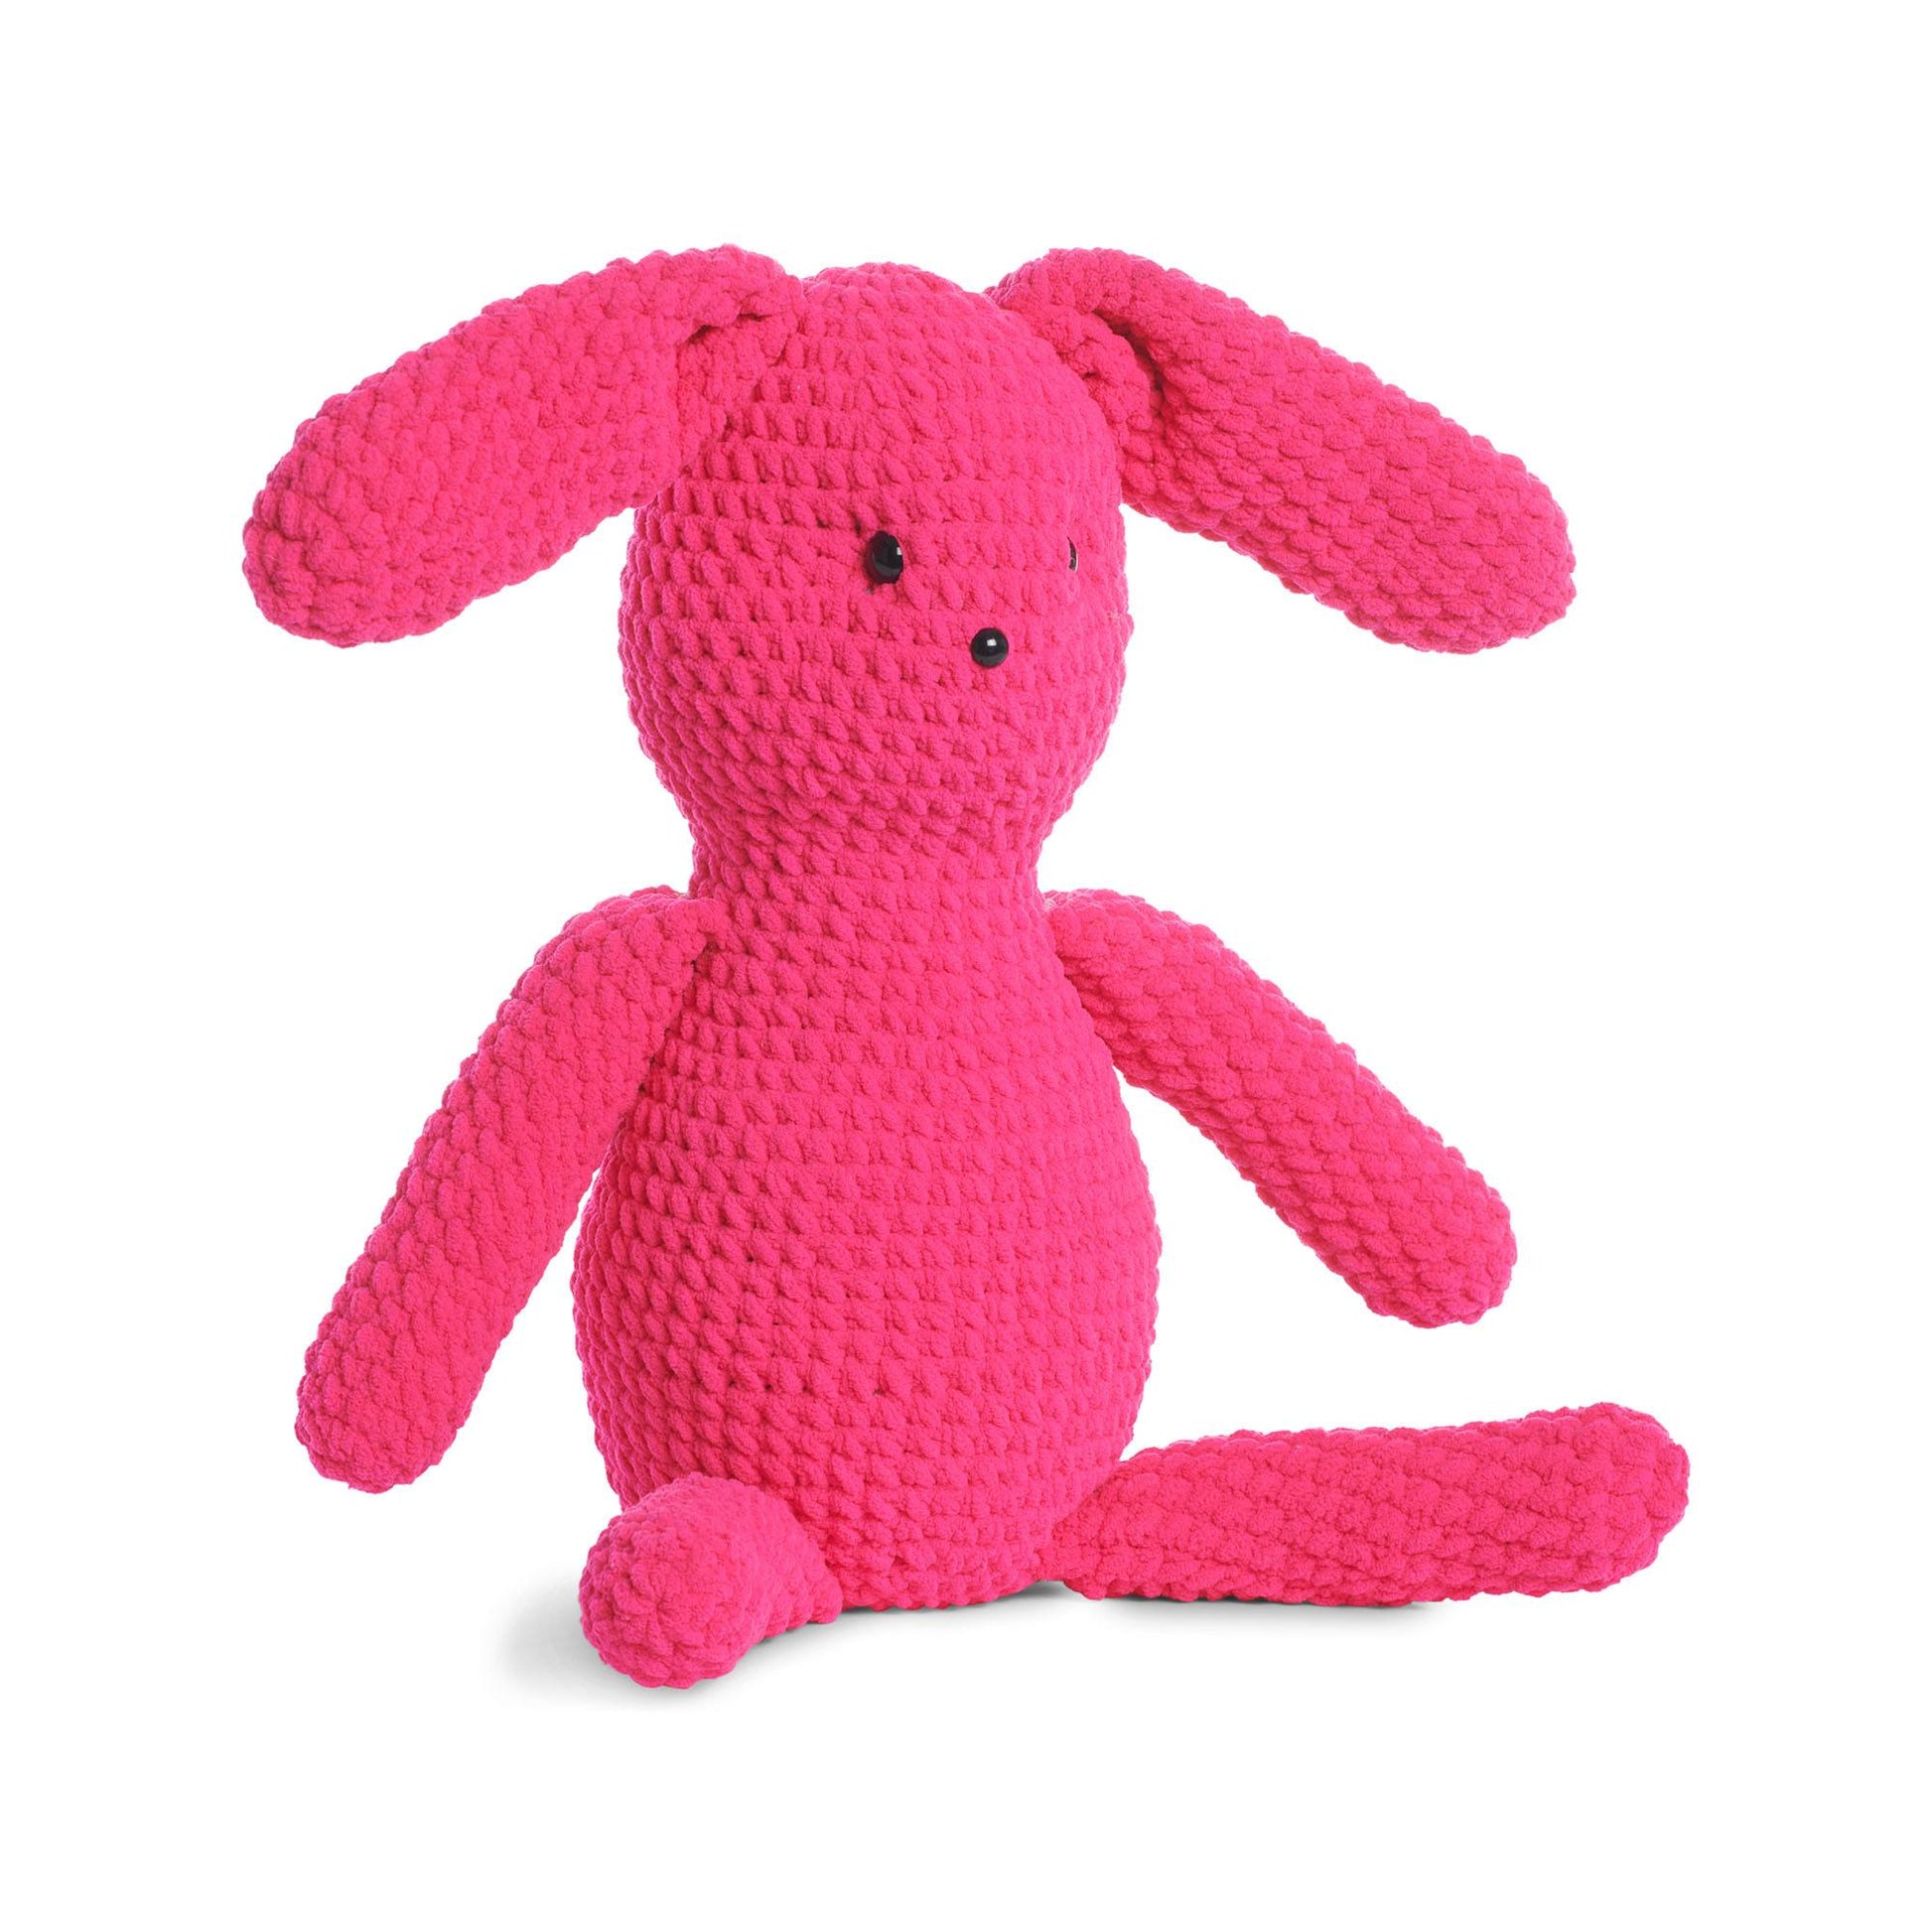 Bernat Ruby Rabbit Beginner Crochet Toy Bright Pink